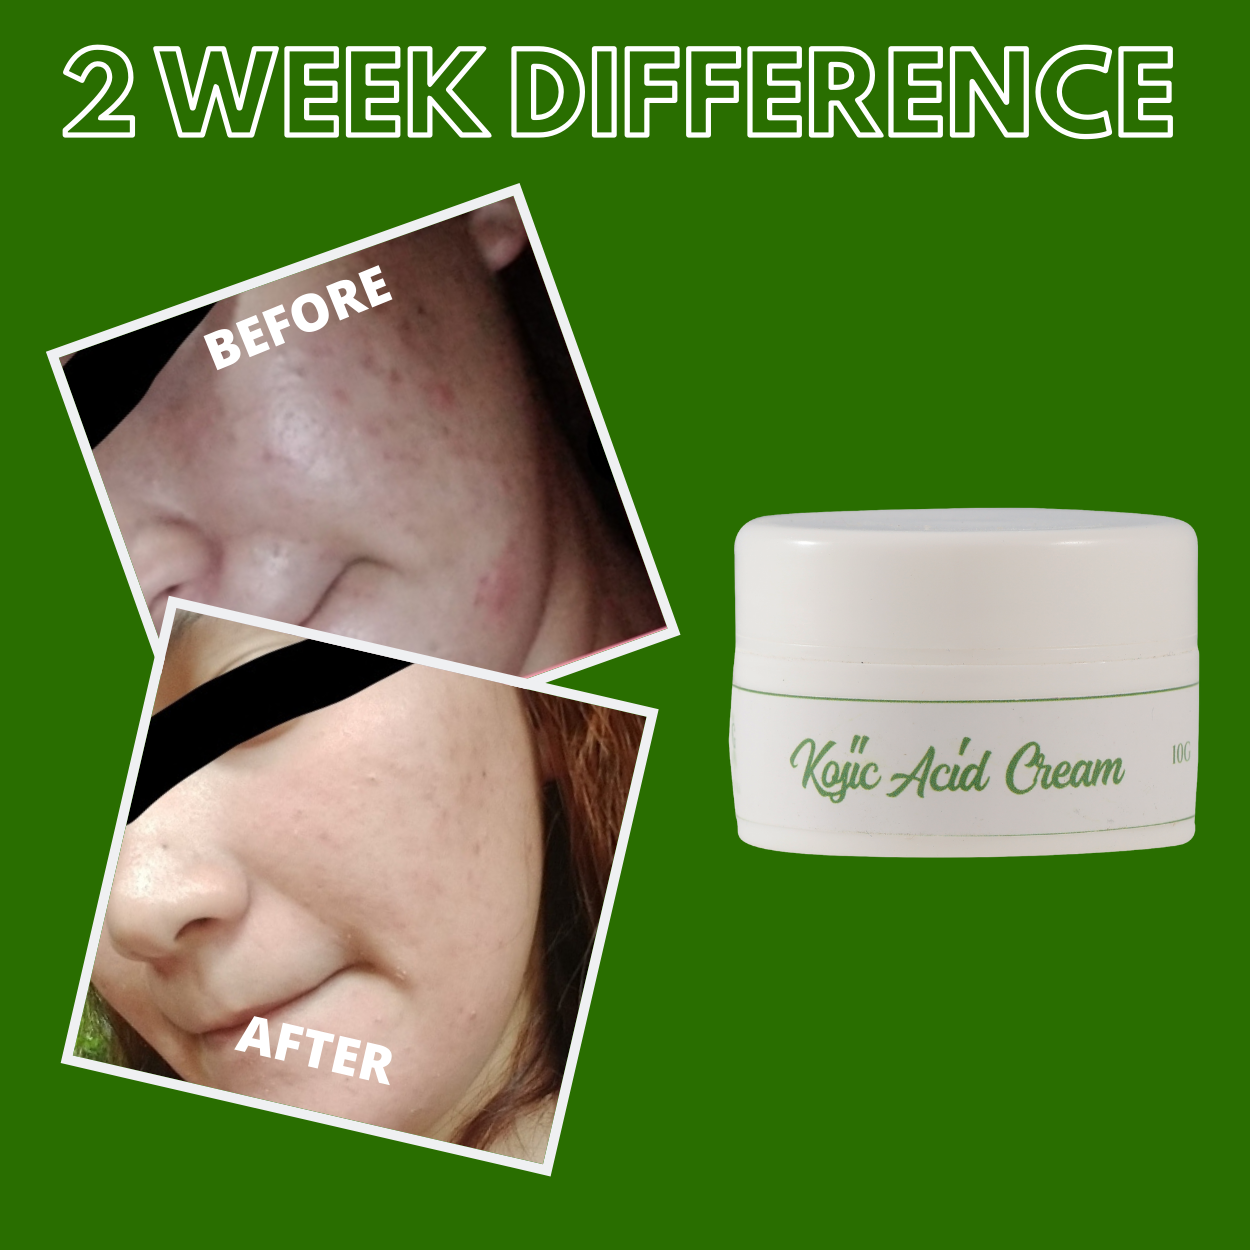 Greenika Kojic Acid Whitening Cream